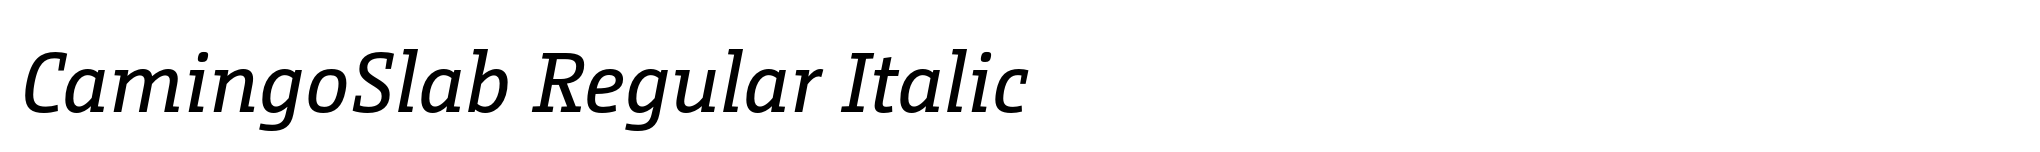 CamingoSlab Regular Italic image